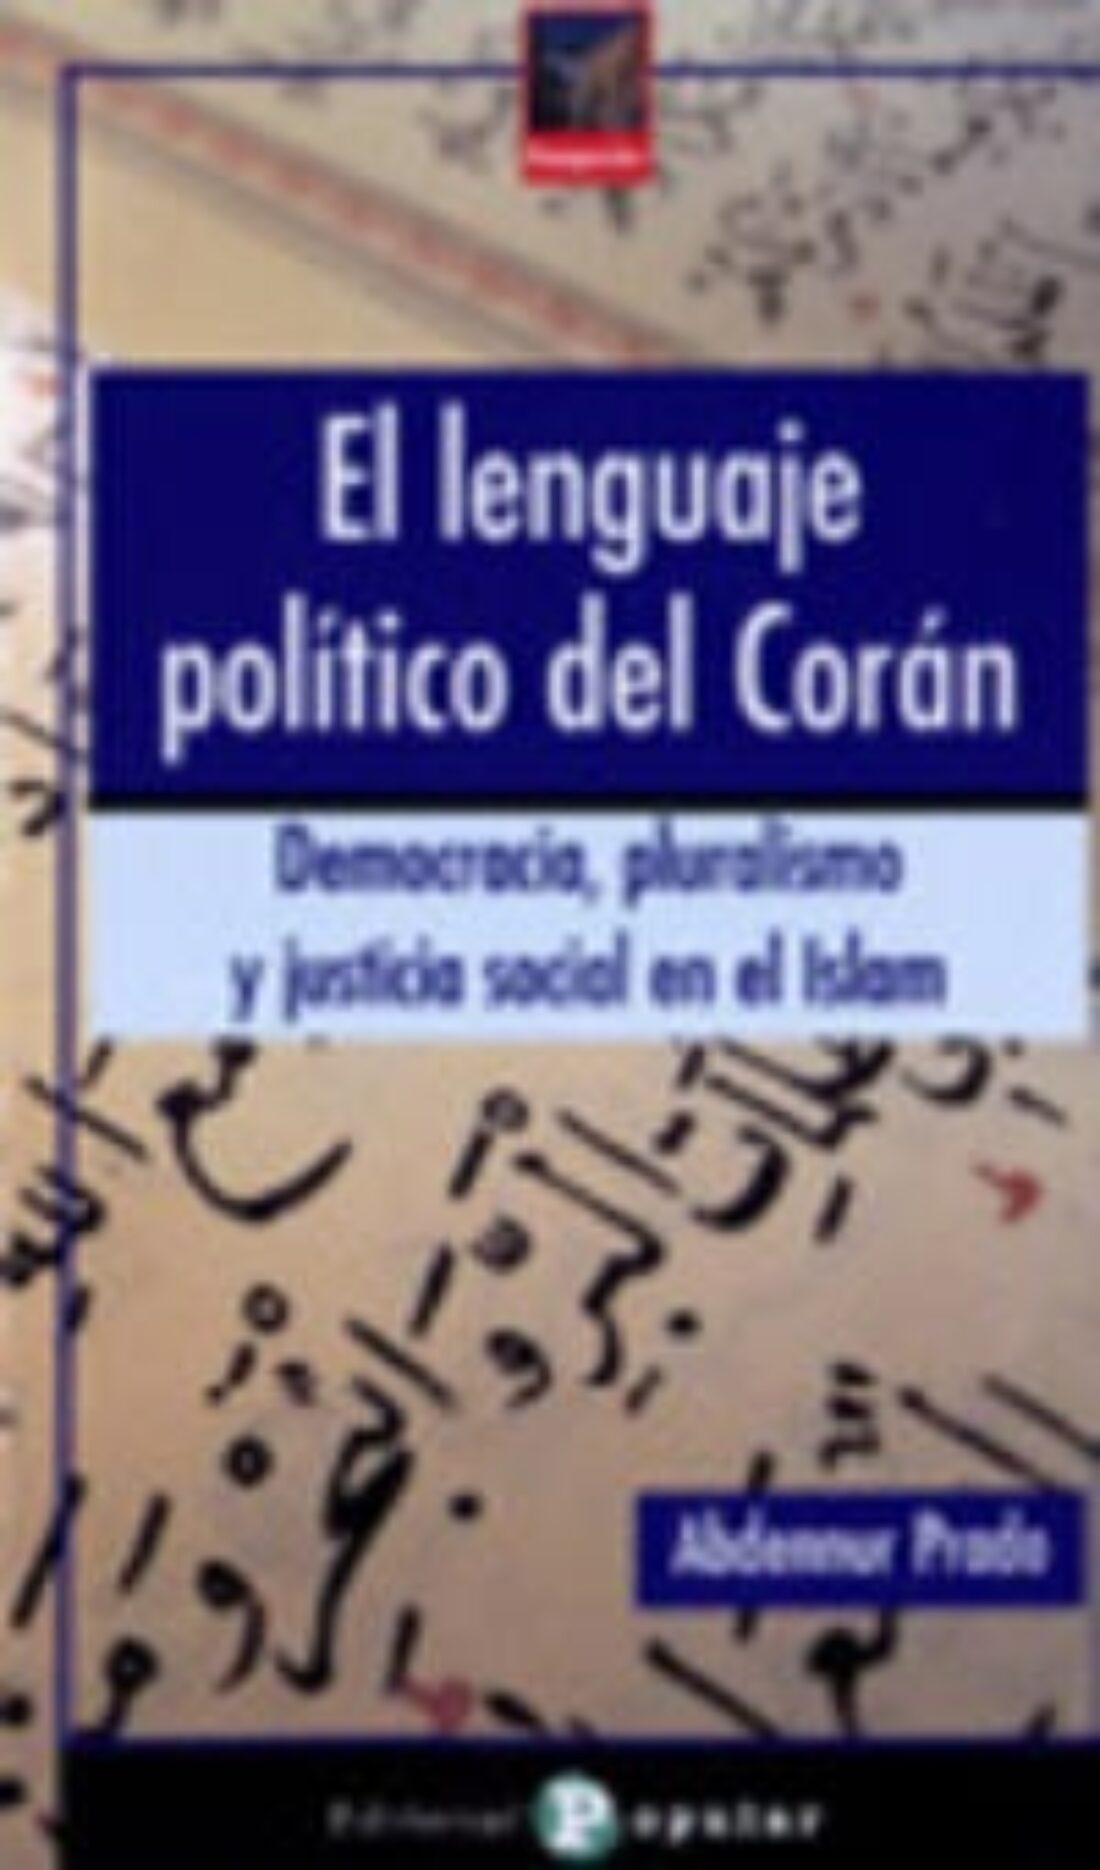 11 mayo, Madrid : presentación de «El lenguaje político del Corán»